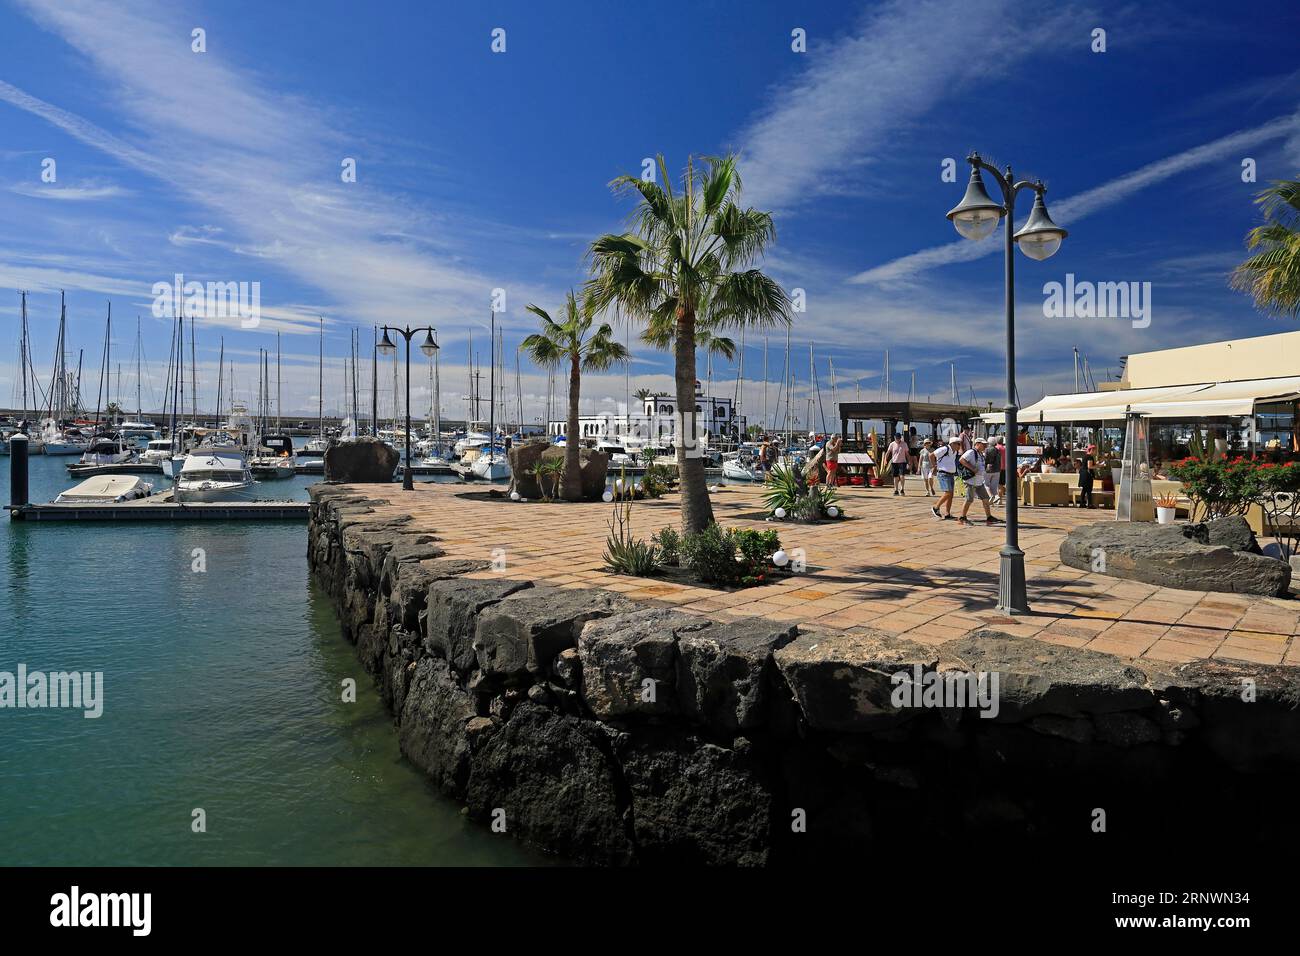 Entspannte Szene im Marina Rubicon mit Touristen, verschiedenen Cafés und Bars. Playa Blanca, Lanzarote, Kanarische Inseln, Spanien. Stockfoto